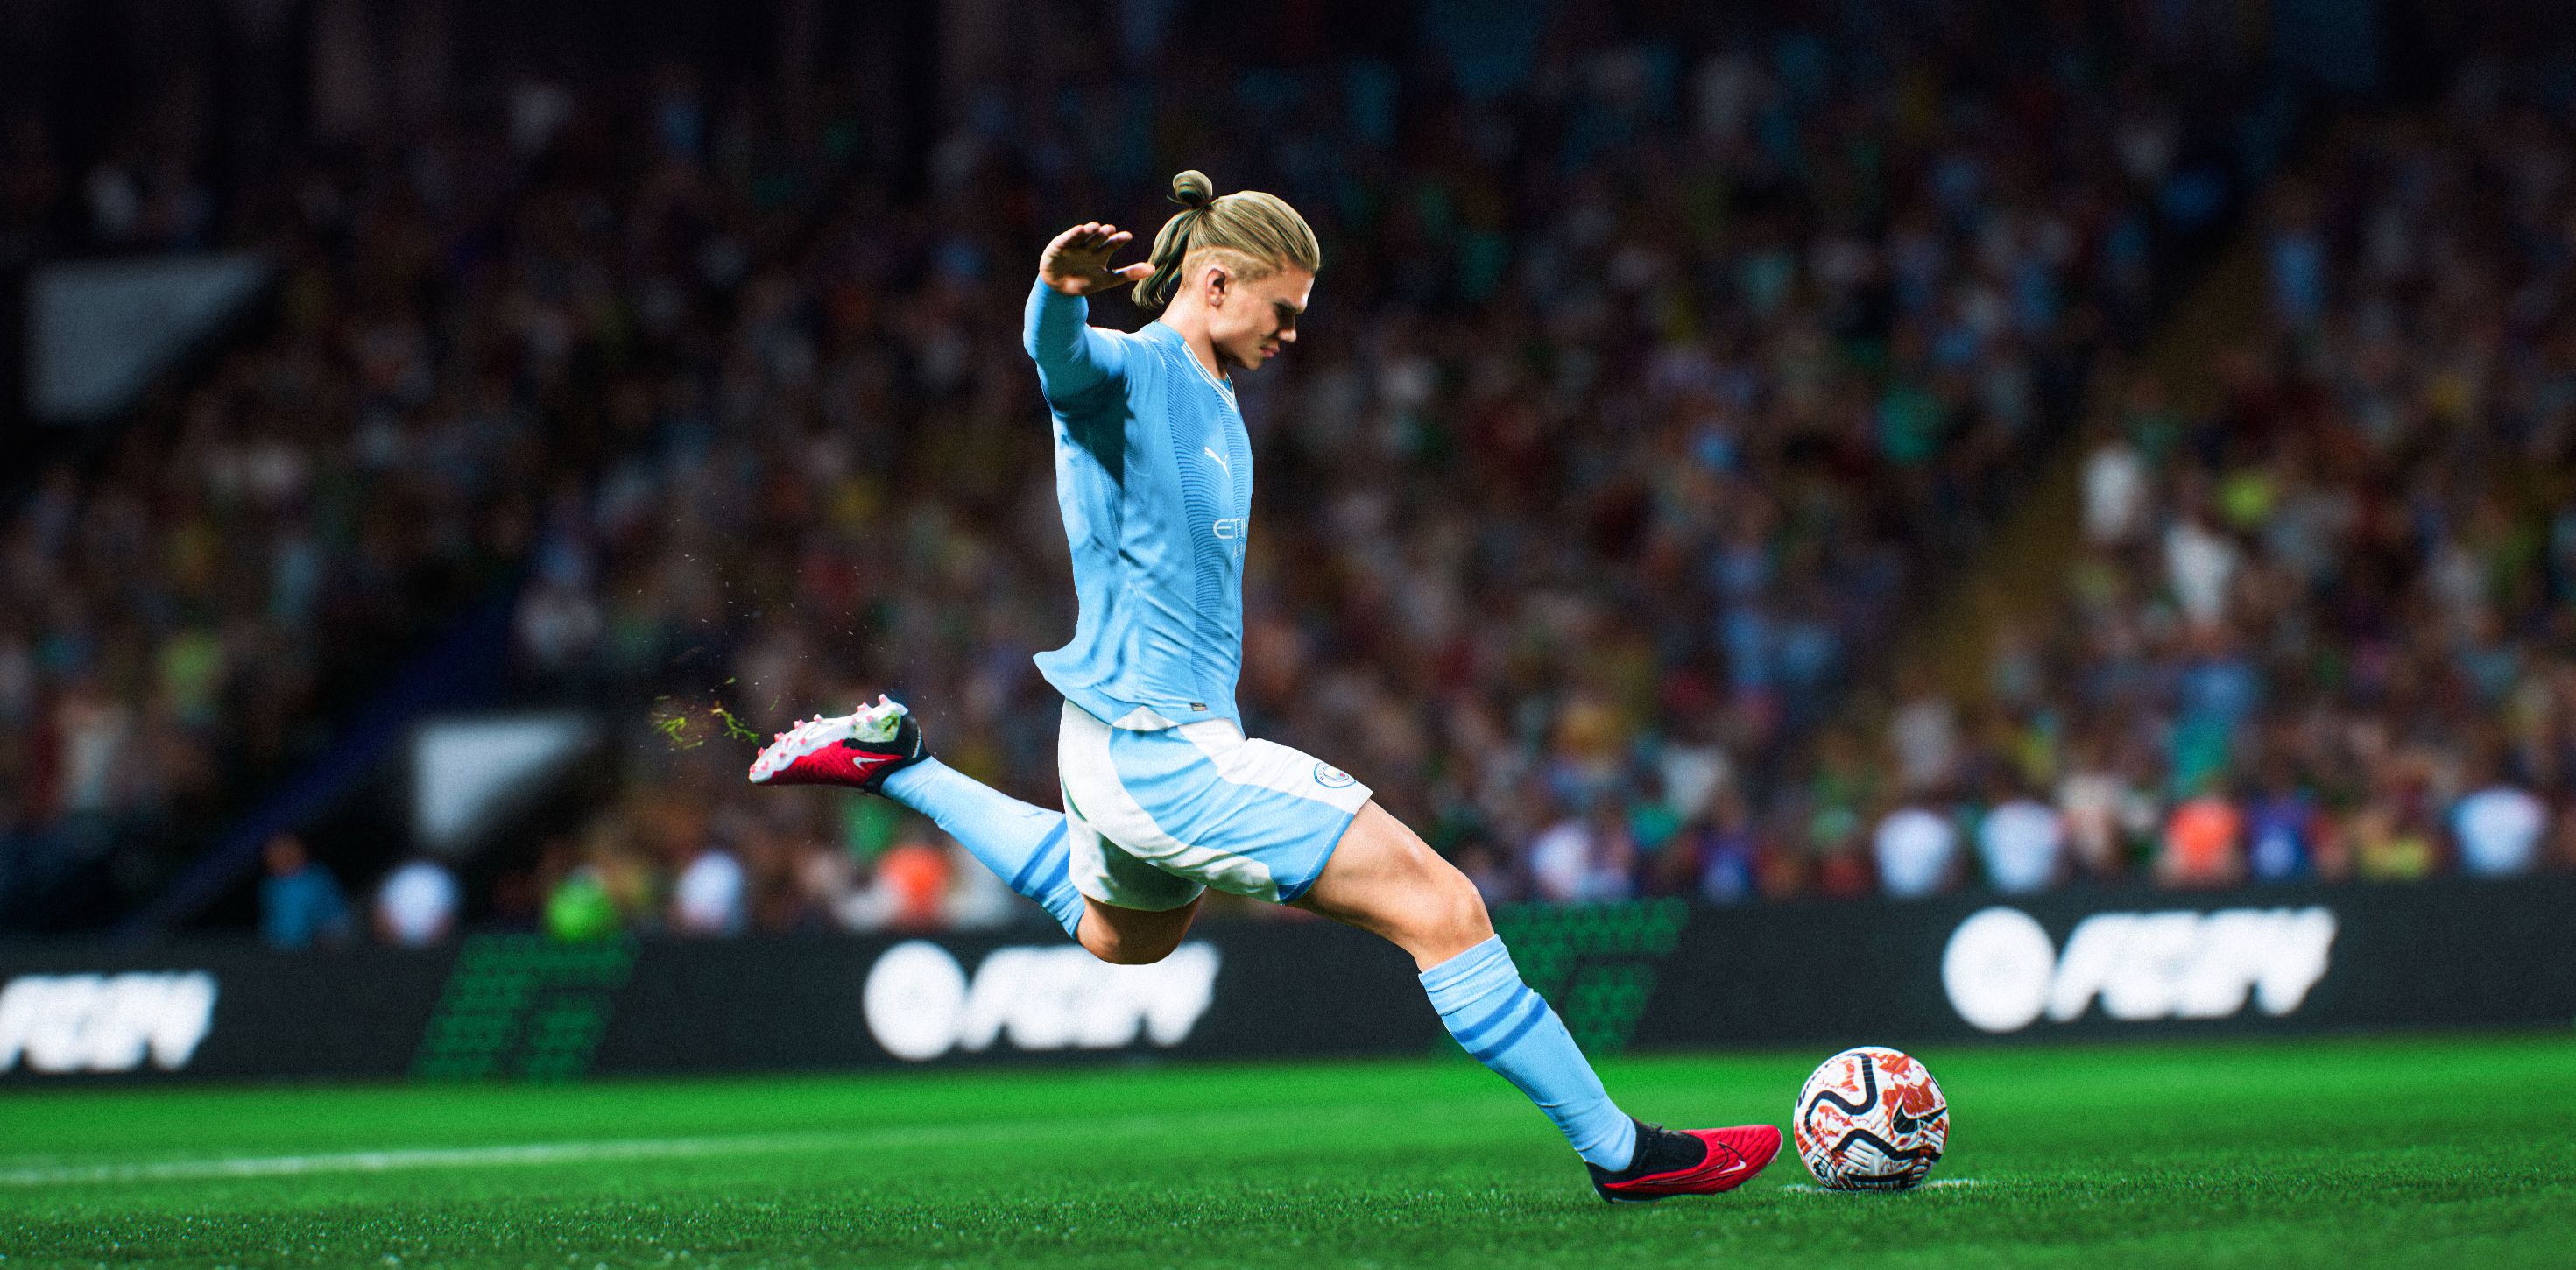 FIFA 23 é lançado: saiba quais são os 40 melhores jogadores do game – LANCE!